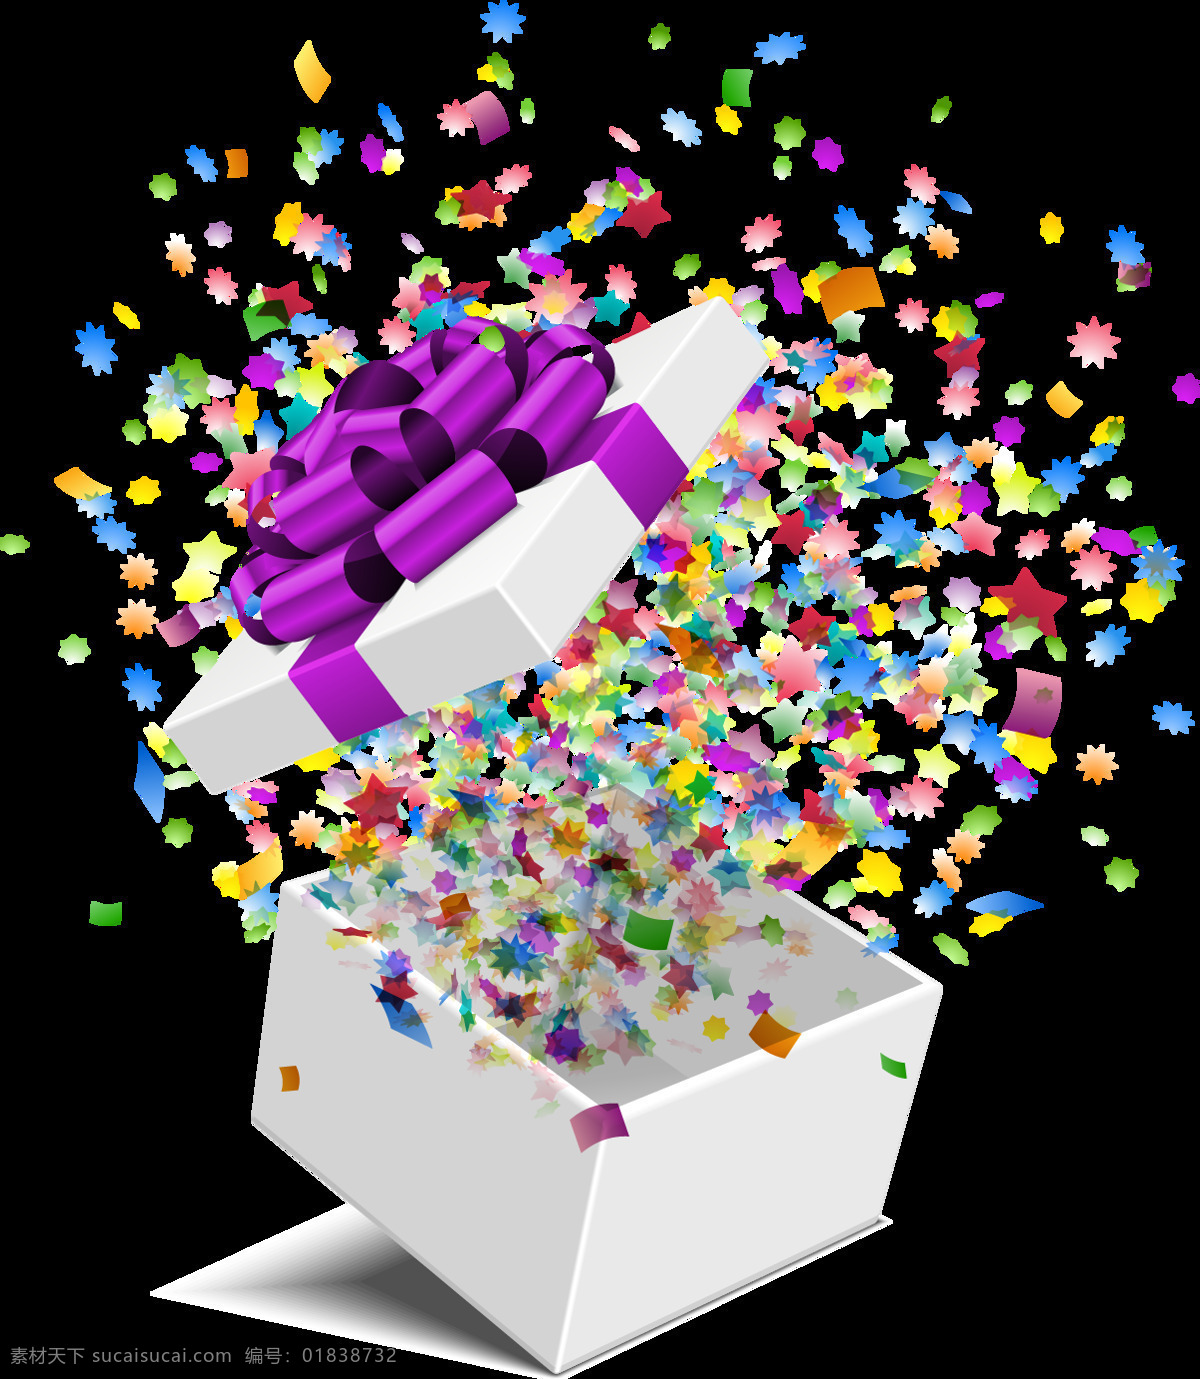 炫彩 礼盒 星形 元素 彩色星形 飘带 庆祝 白色礼盒 紫色蝴蝶结 免抠